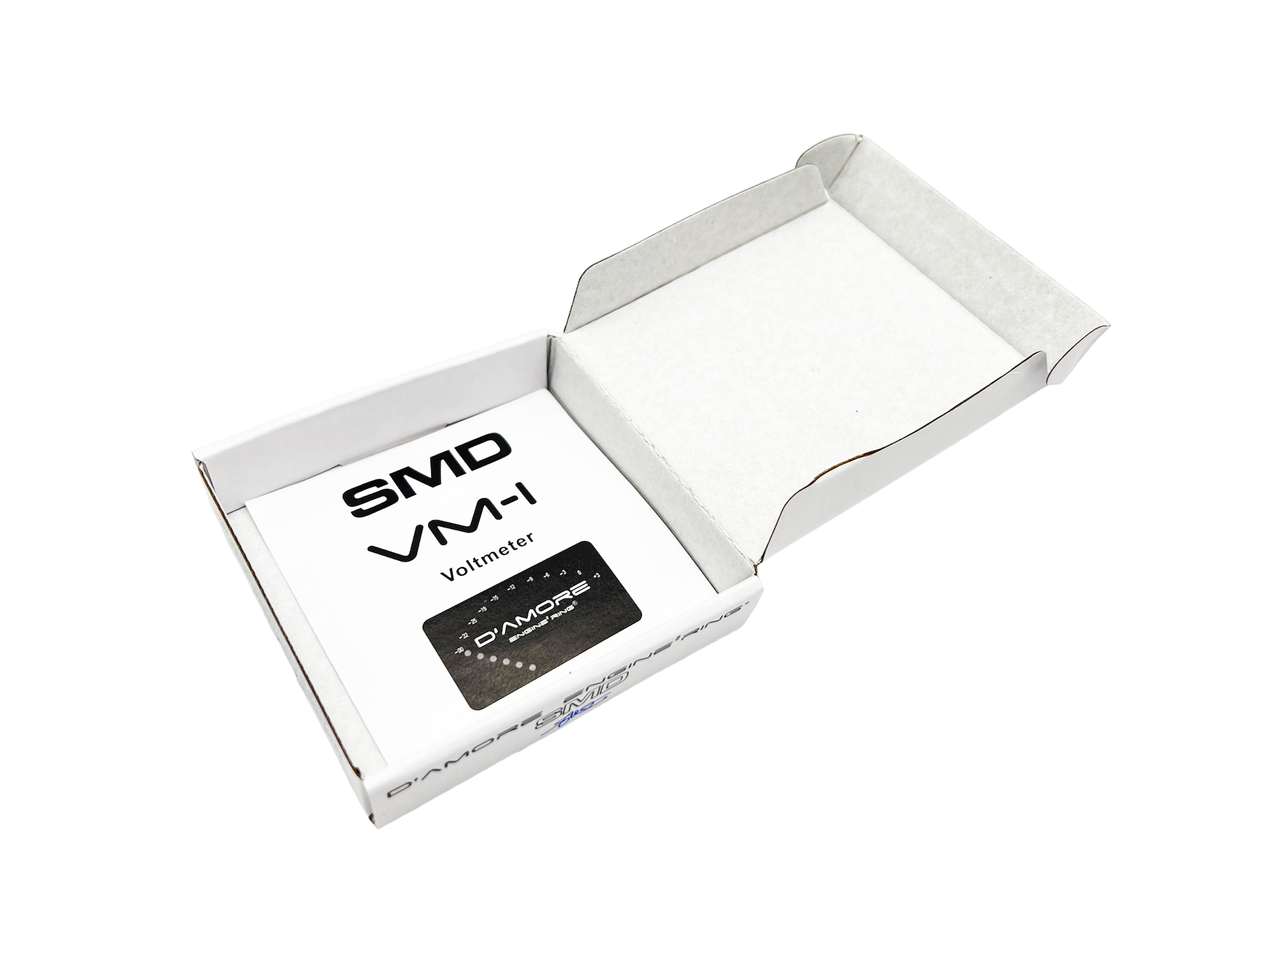 Steve Meade Designs SMD 12V Voltmeter SMD-VM-1